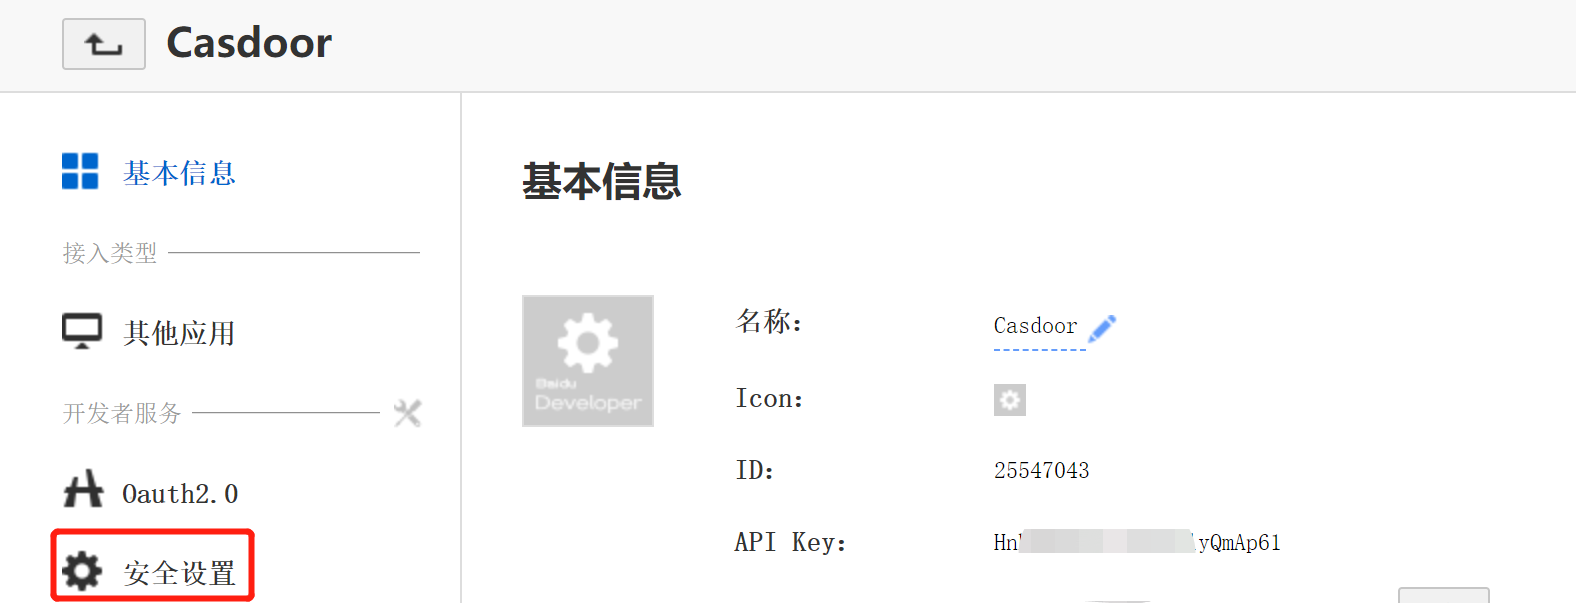 การตั้งค่า URL ของ Baidu